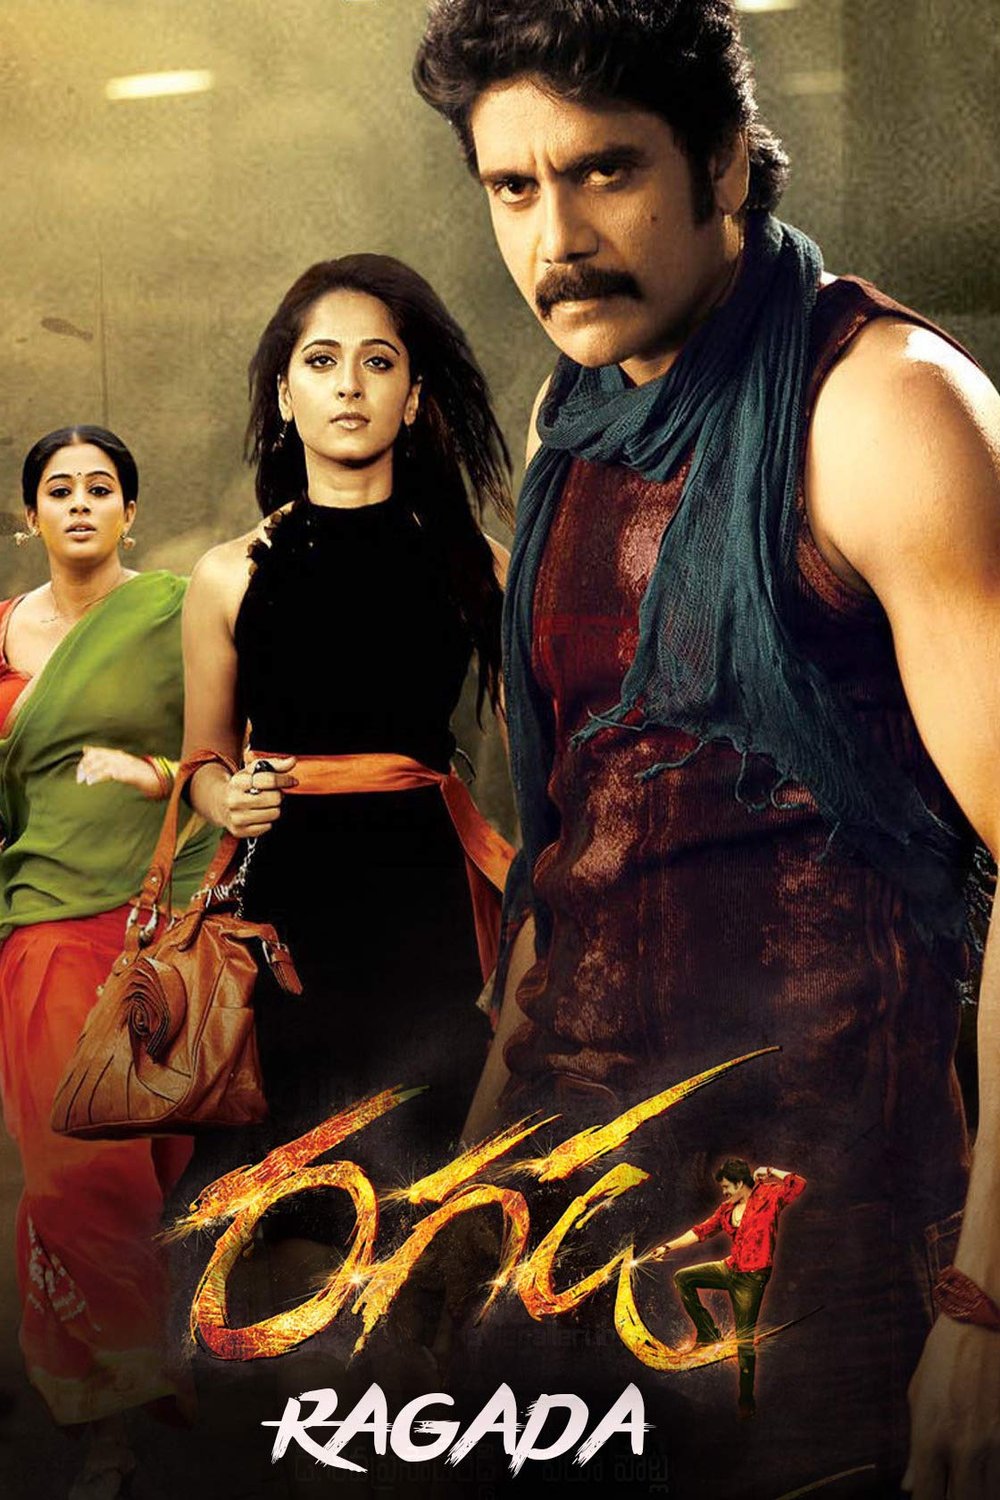 Telugu poster of the movie Ragada